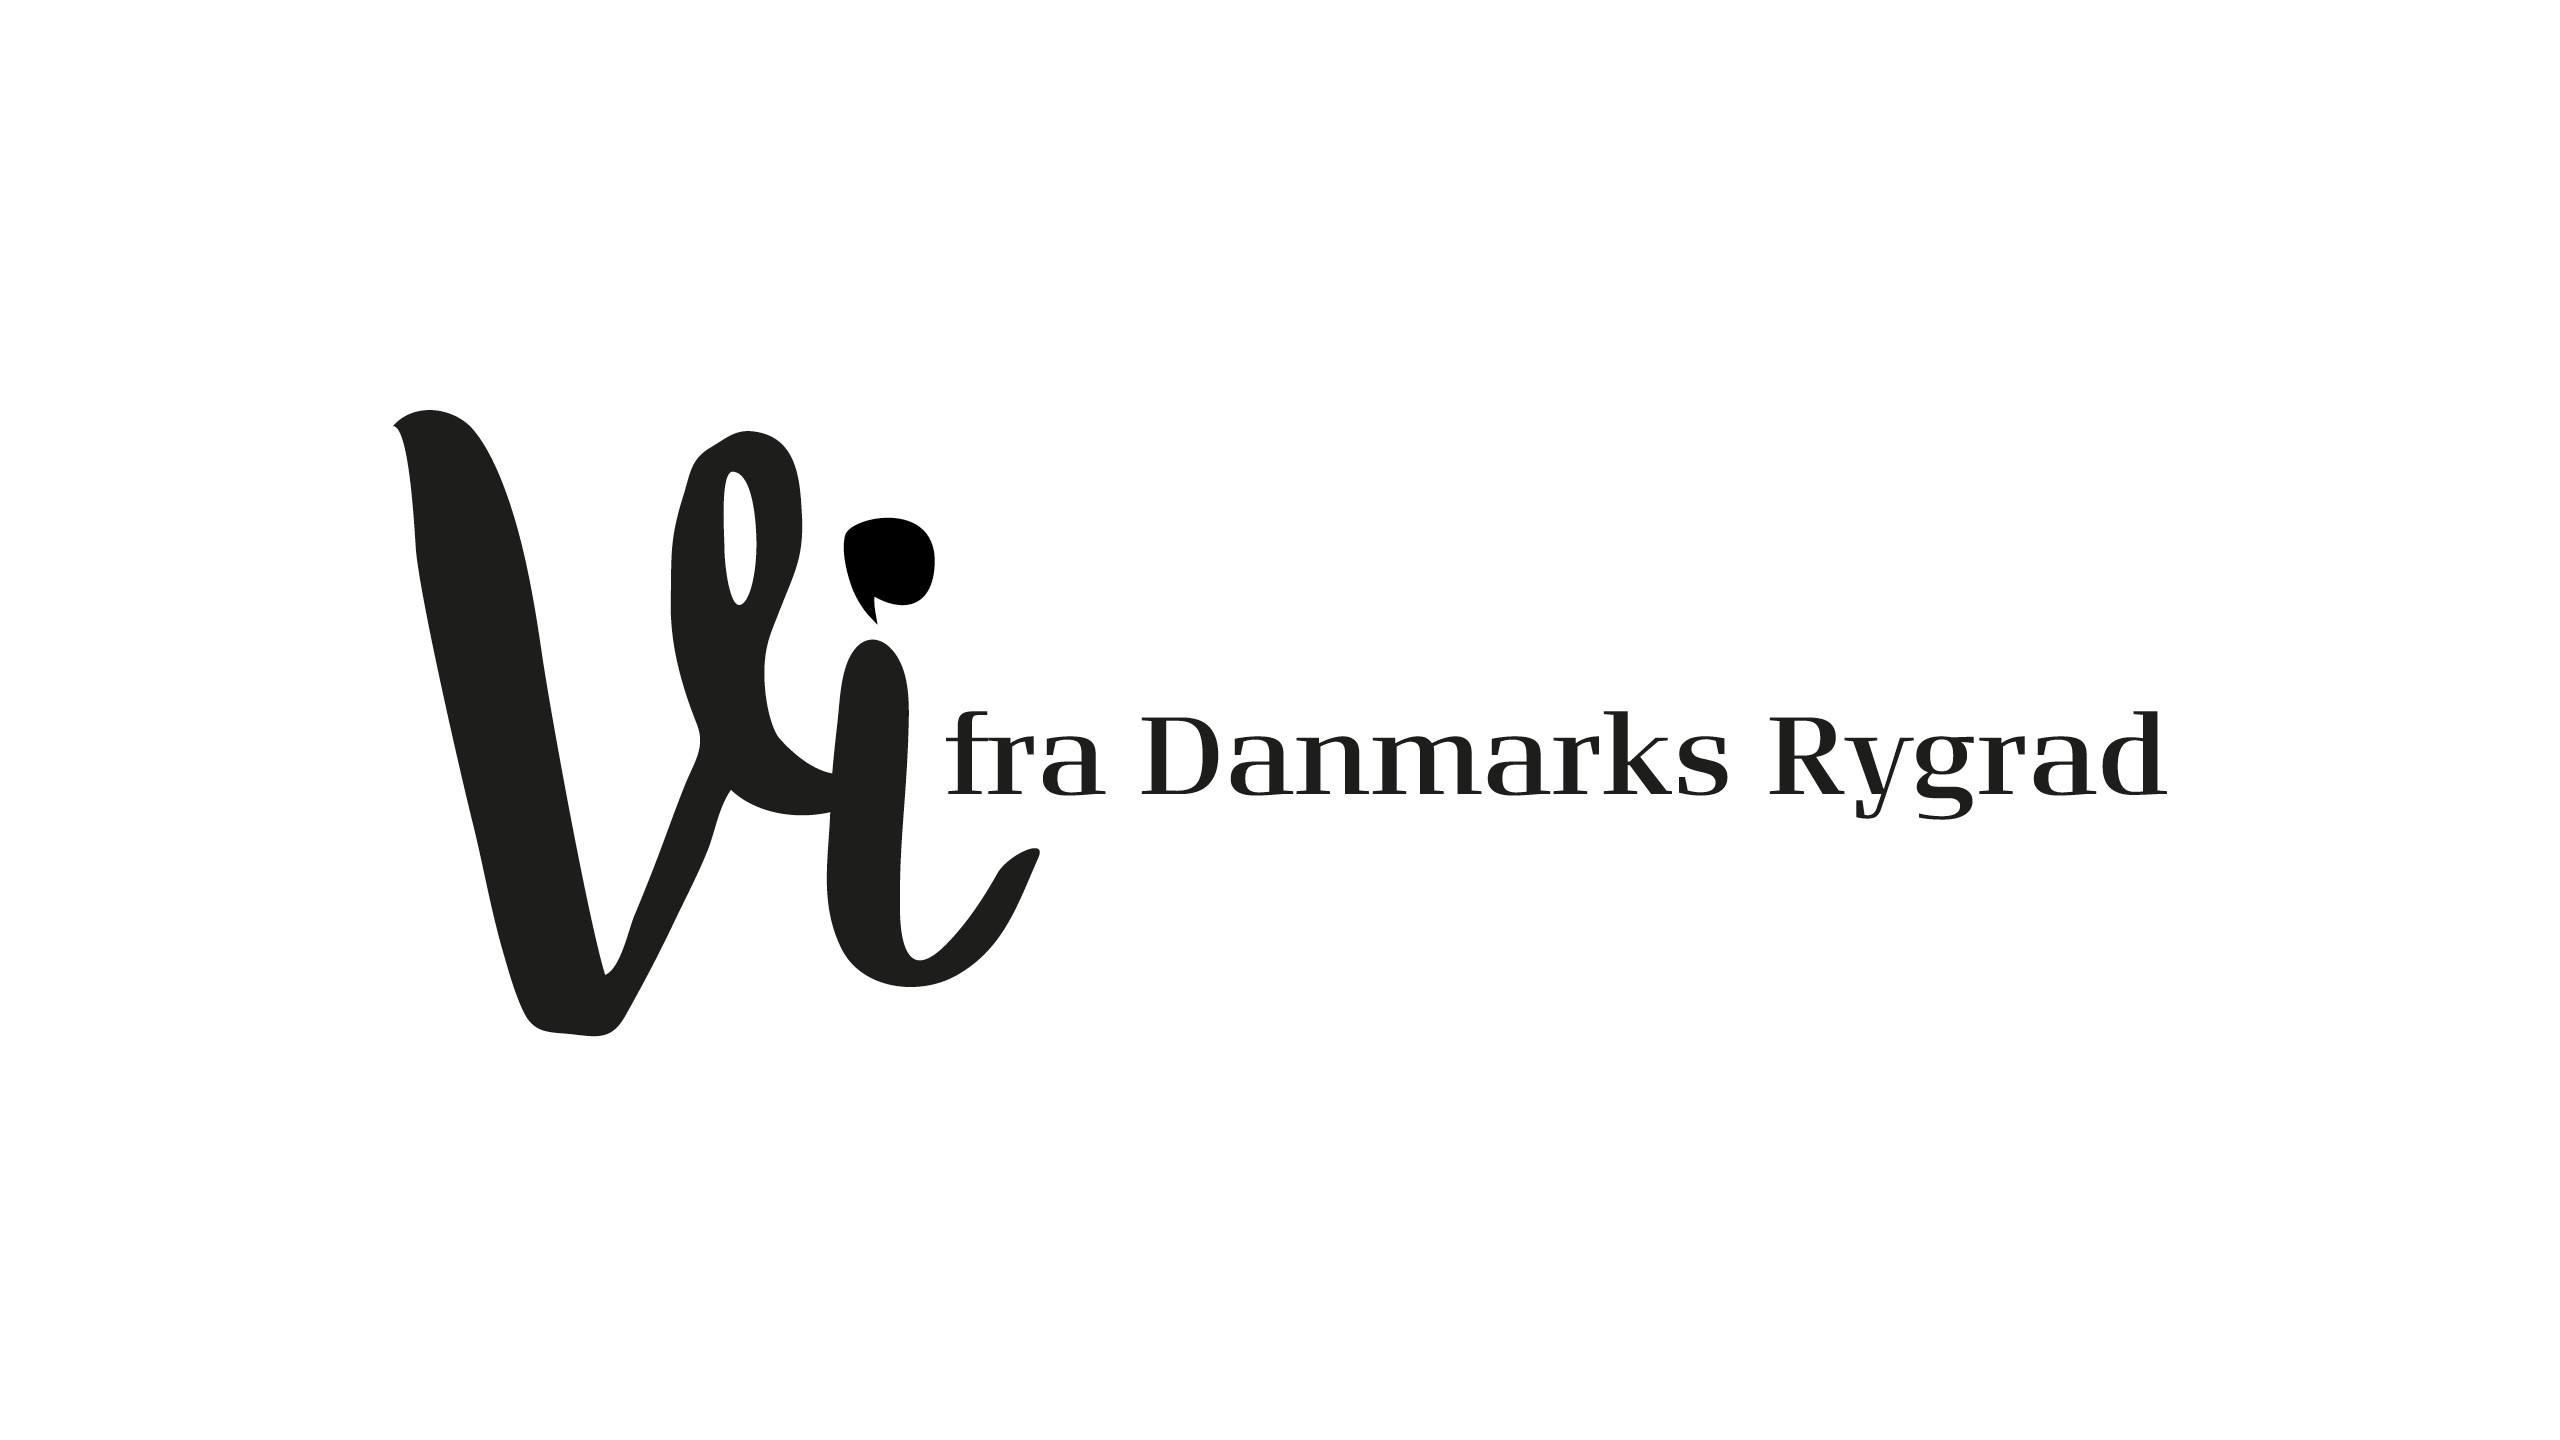 TF_VifraDKRygrad_logo.jpg